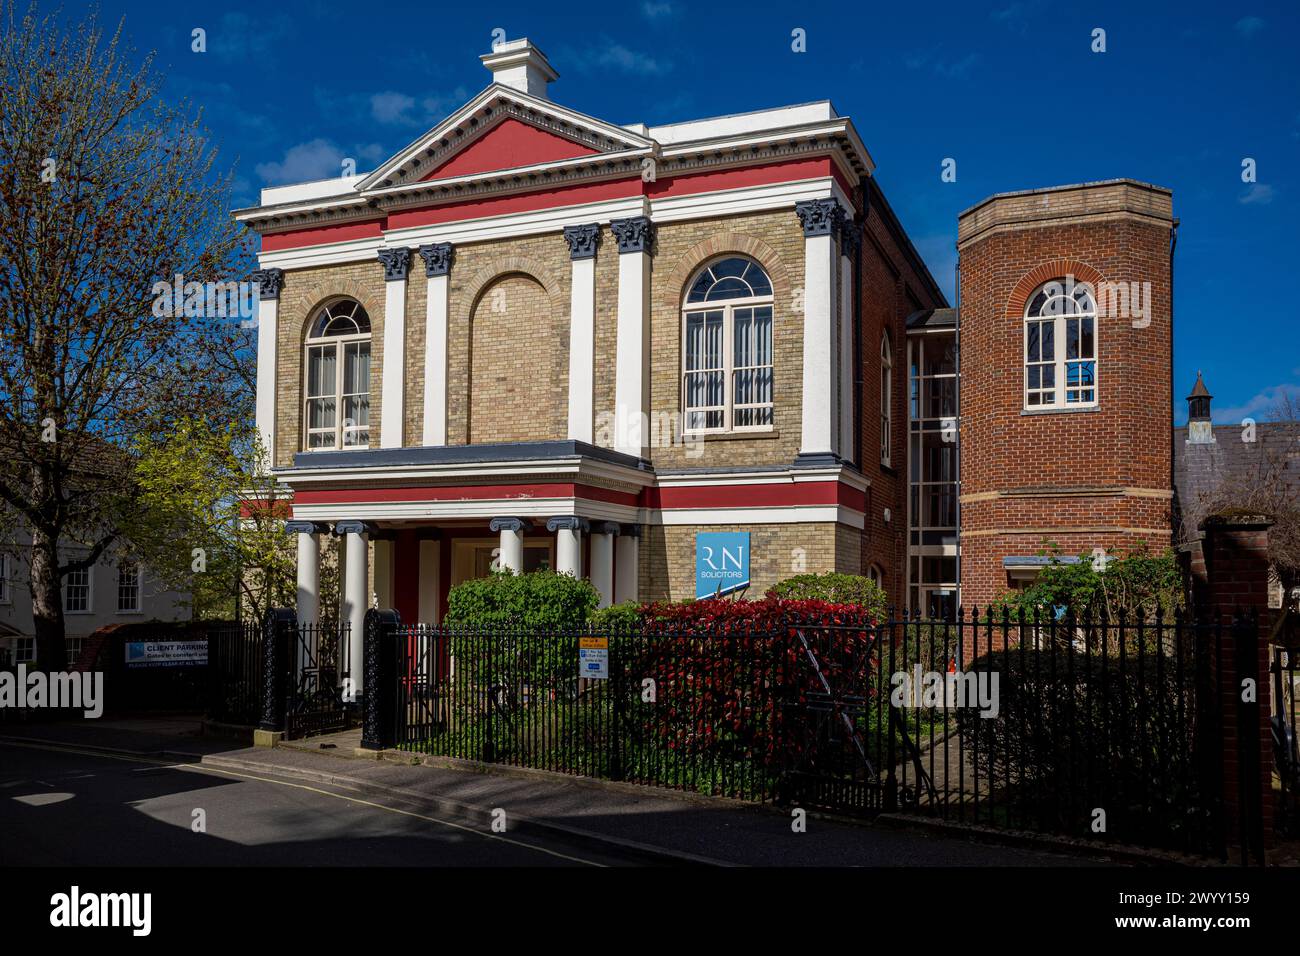 Ancienne chapelle et école catholique, Willow Lane Norwich - la chapelle jésuite des Saints Apôtres, Norwich, 1827-9, architecte James patience. Maintenant RN Solicitors. Banque D'Images